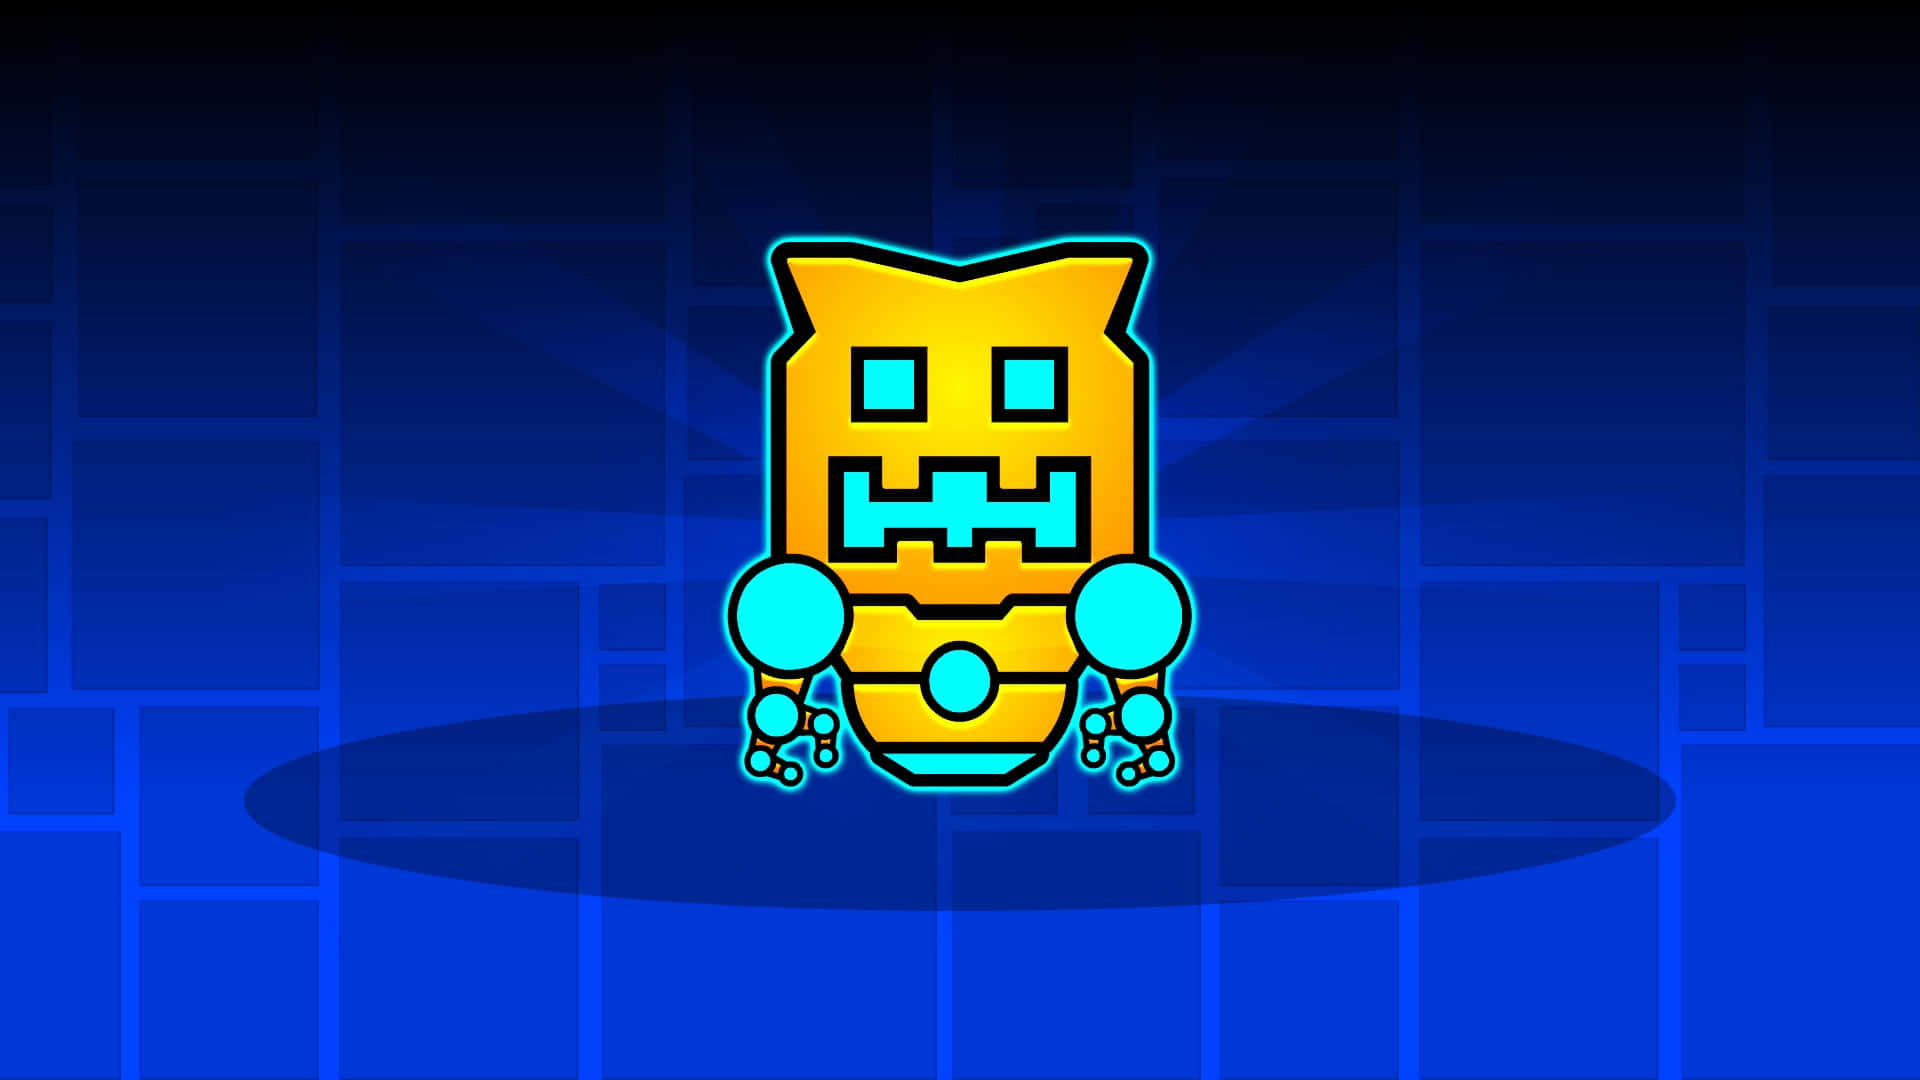 Einblauer Und Gelber Roboter Mit Einem Gelben Gesicht.